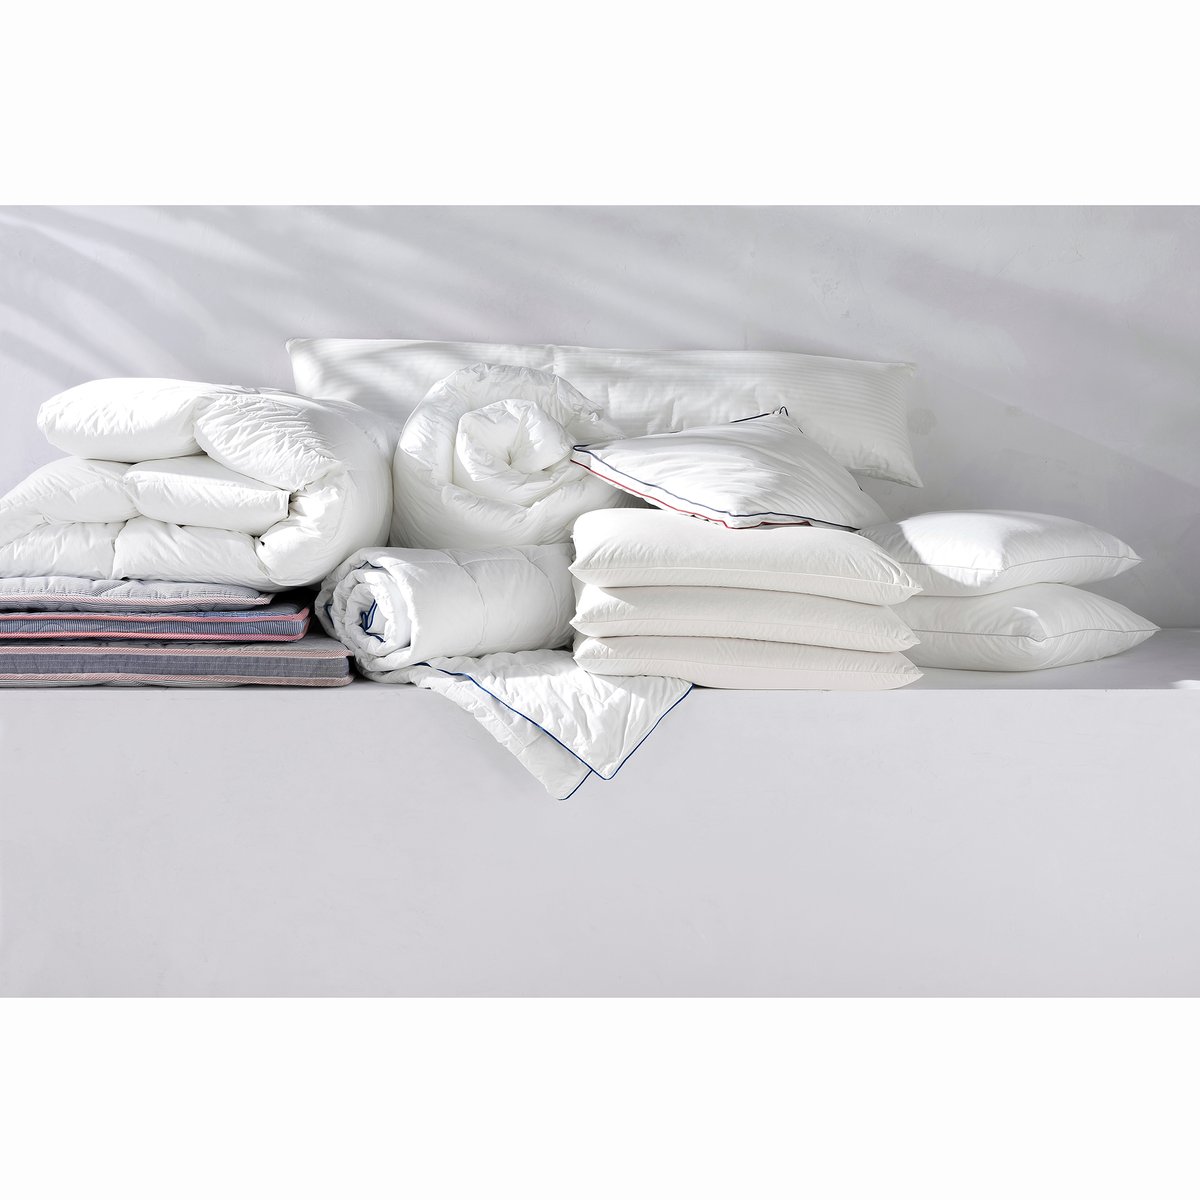 Одеяло La Redoute Синтетическое Banket 140 x 200 см белый, размер 140 x 200 см - фото 2